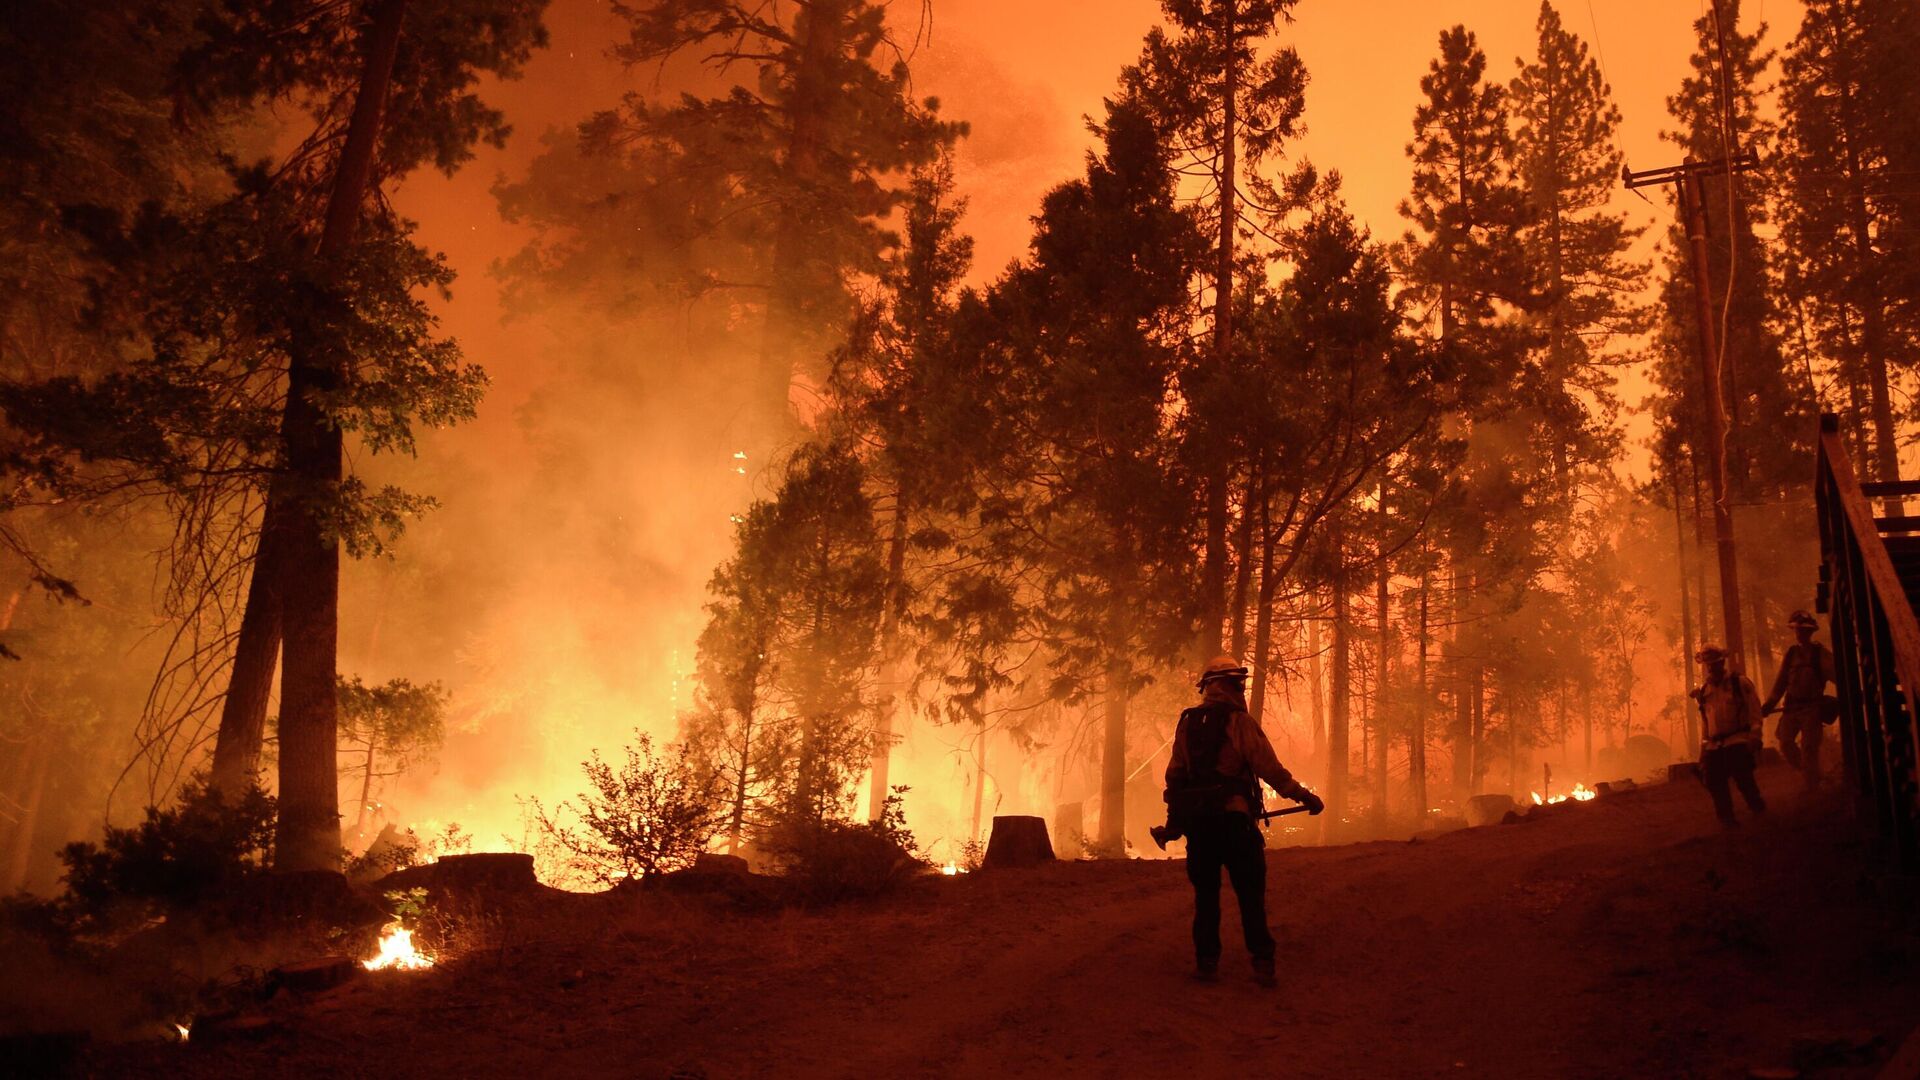 Пожарные во время тушения лесного пожара в штате Калифорния - РИА Новости, 1920, 12.09.2020